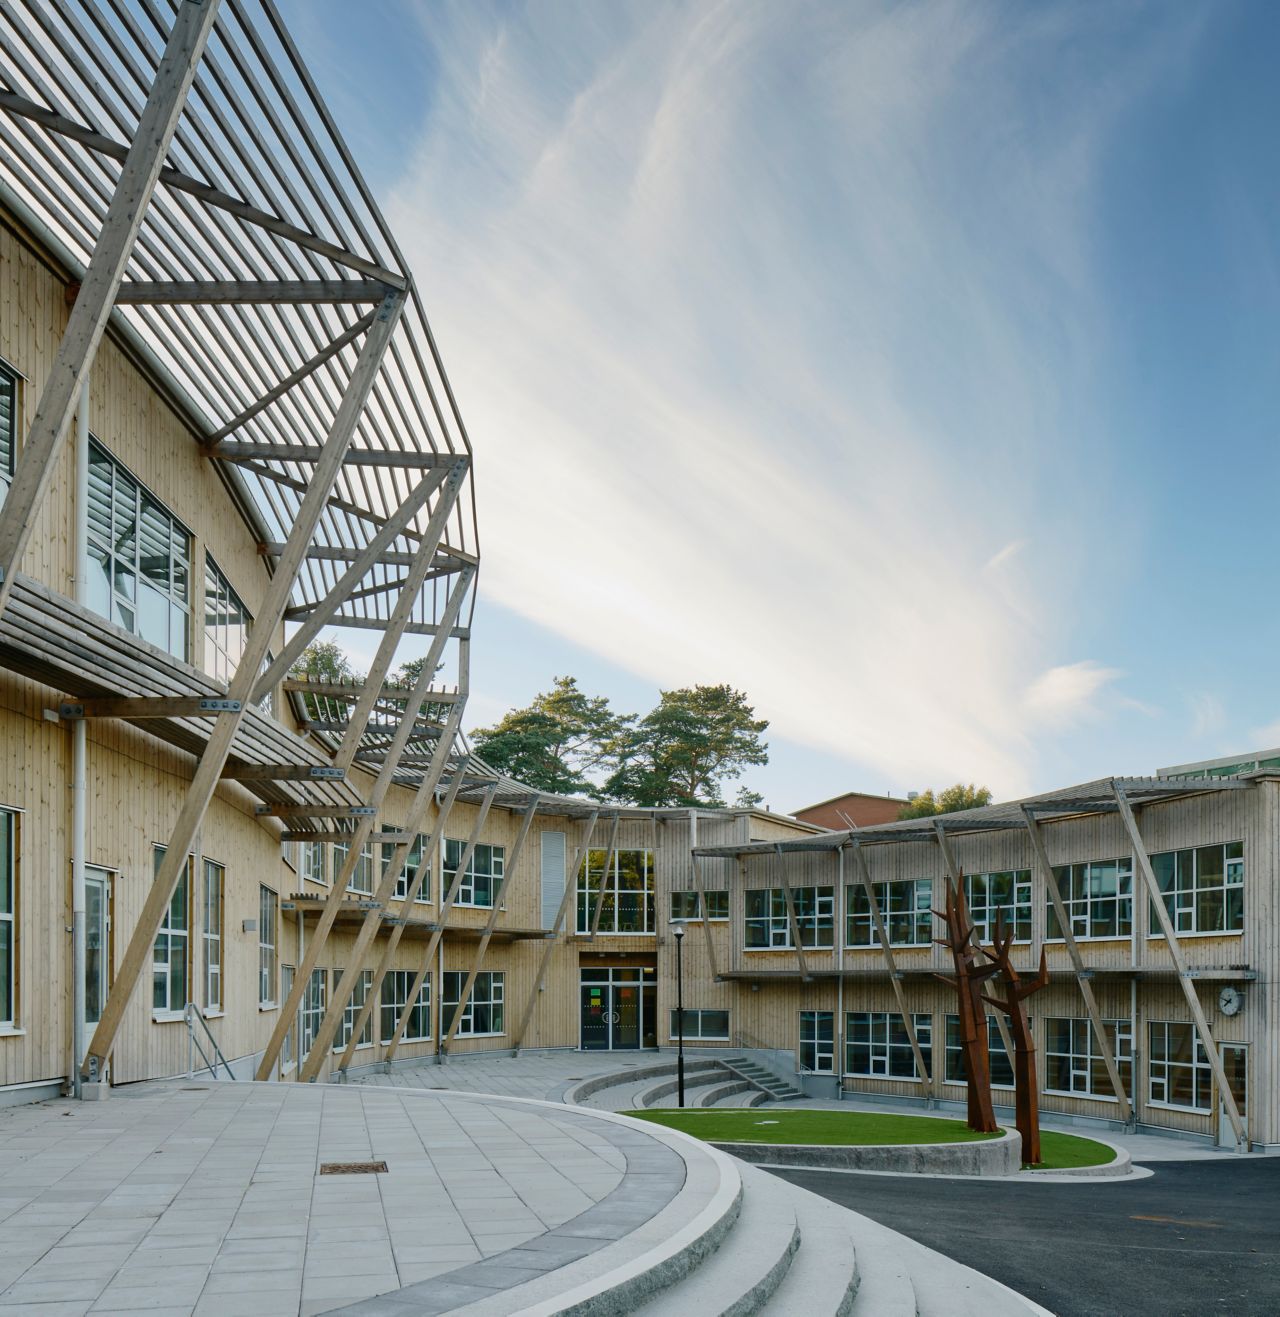 Public school Landamäreskolan, designed by Wahlström & Steijner Arkitekter